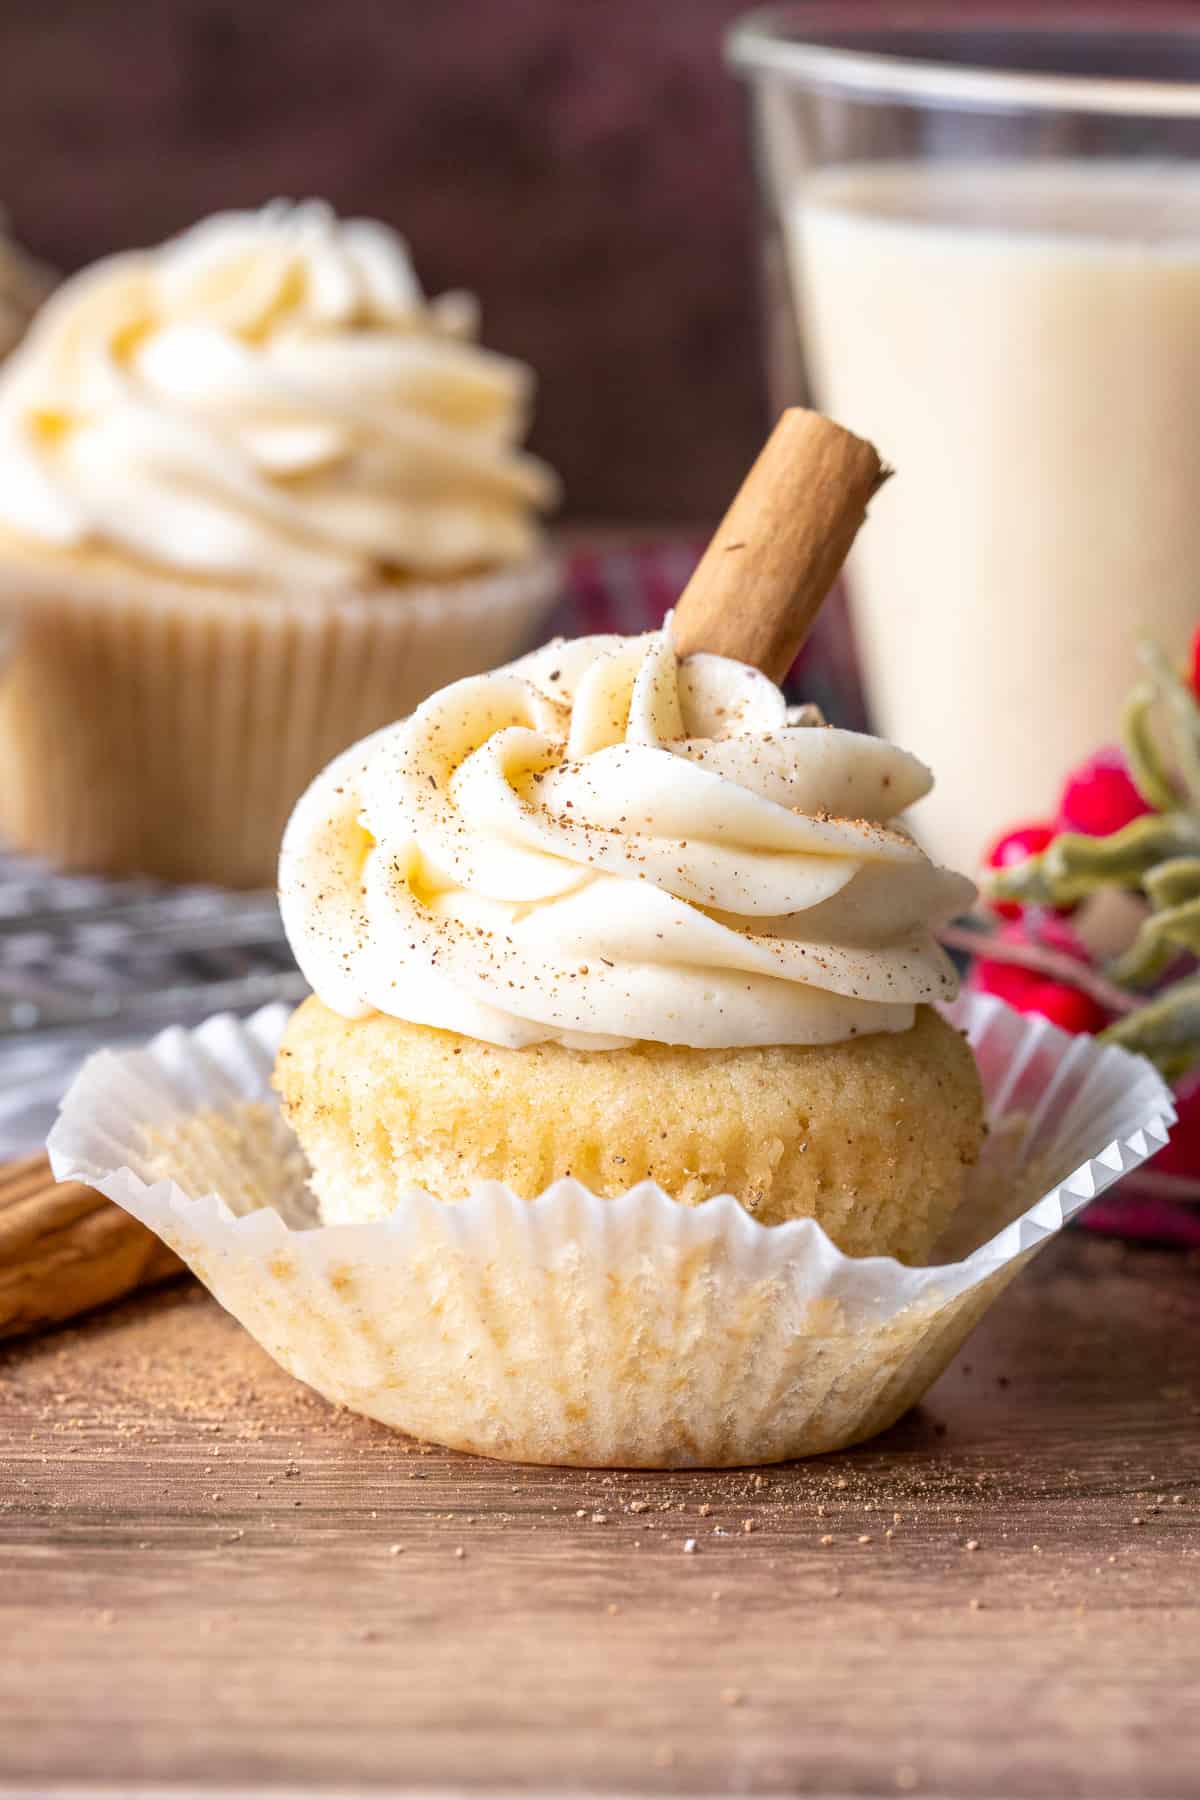 Eggnog cupcake with a glass of eggnog